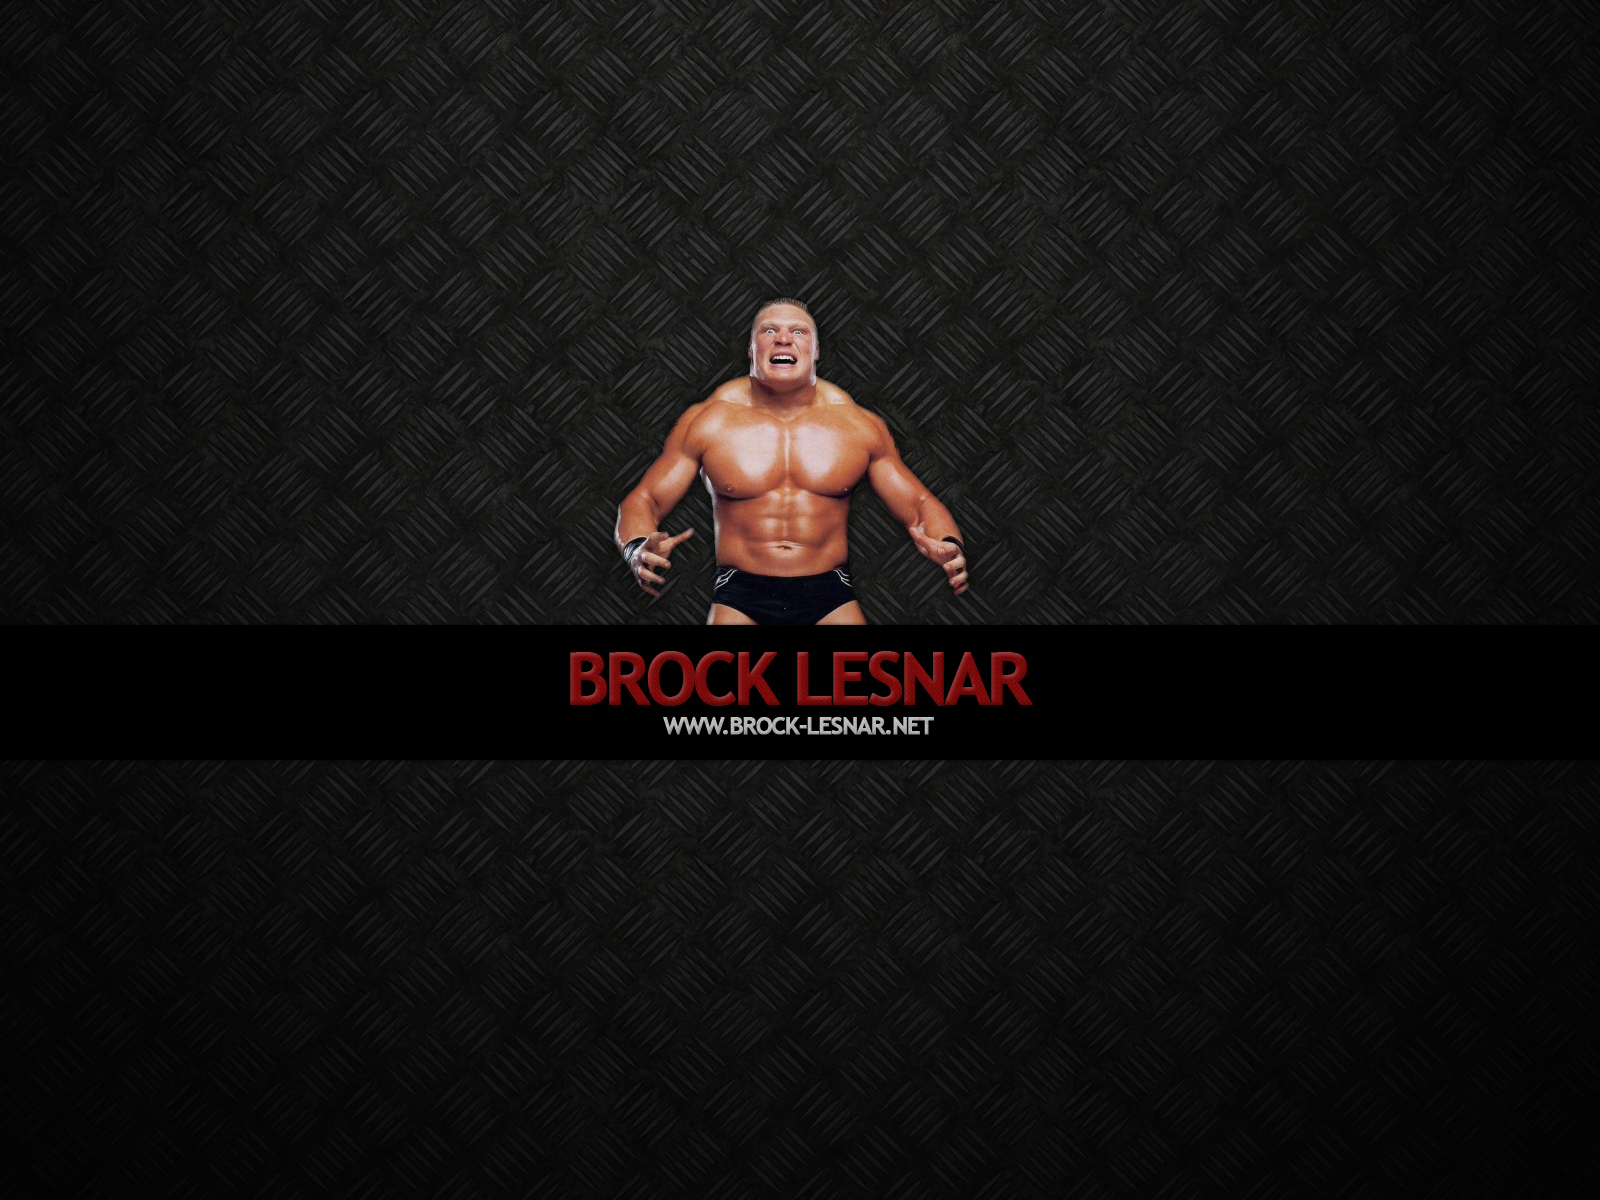 Brock Lesnar Wallpaper Stock